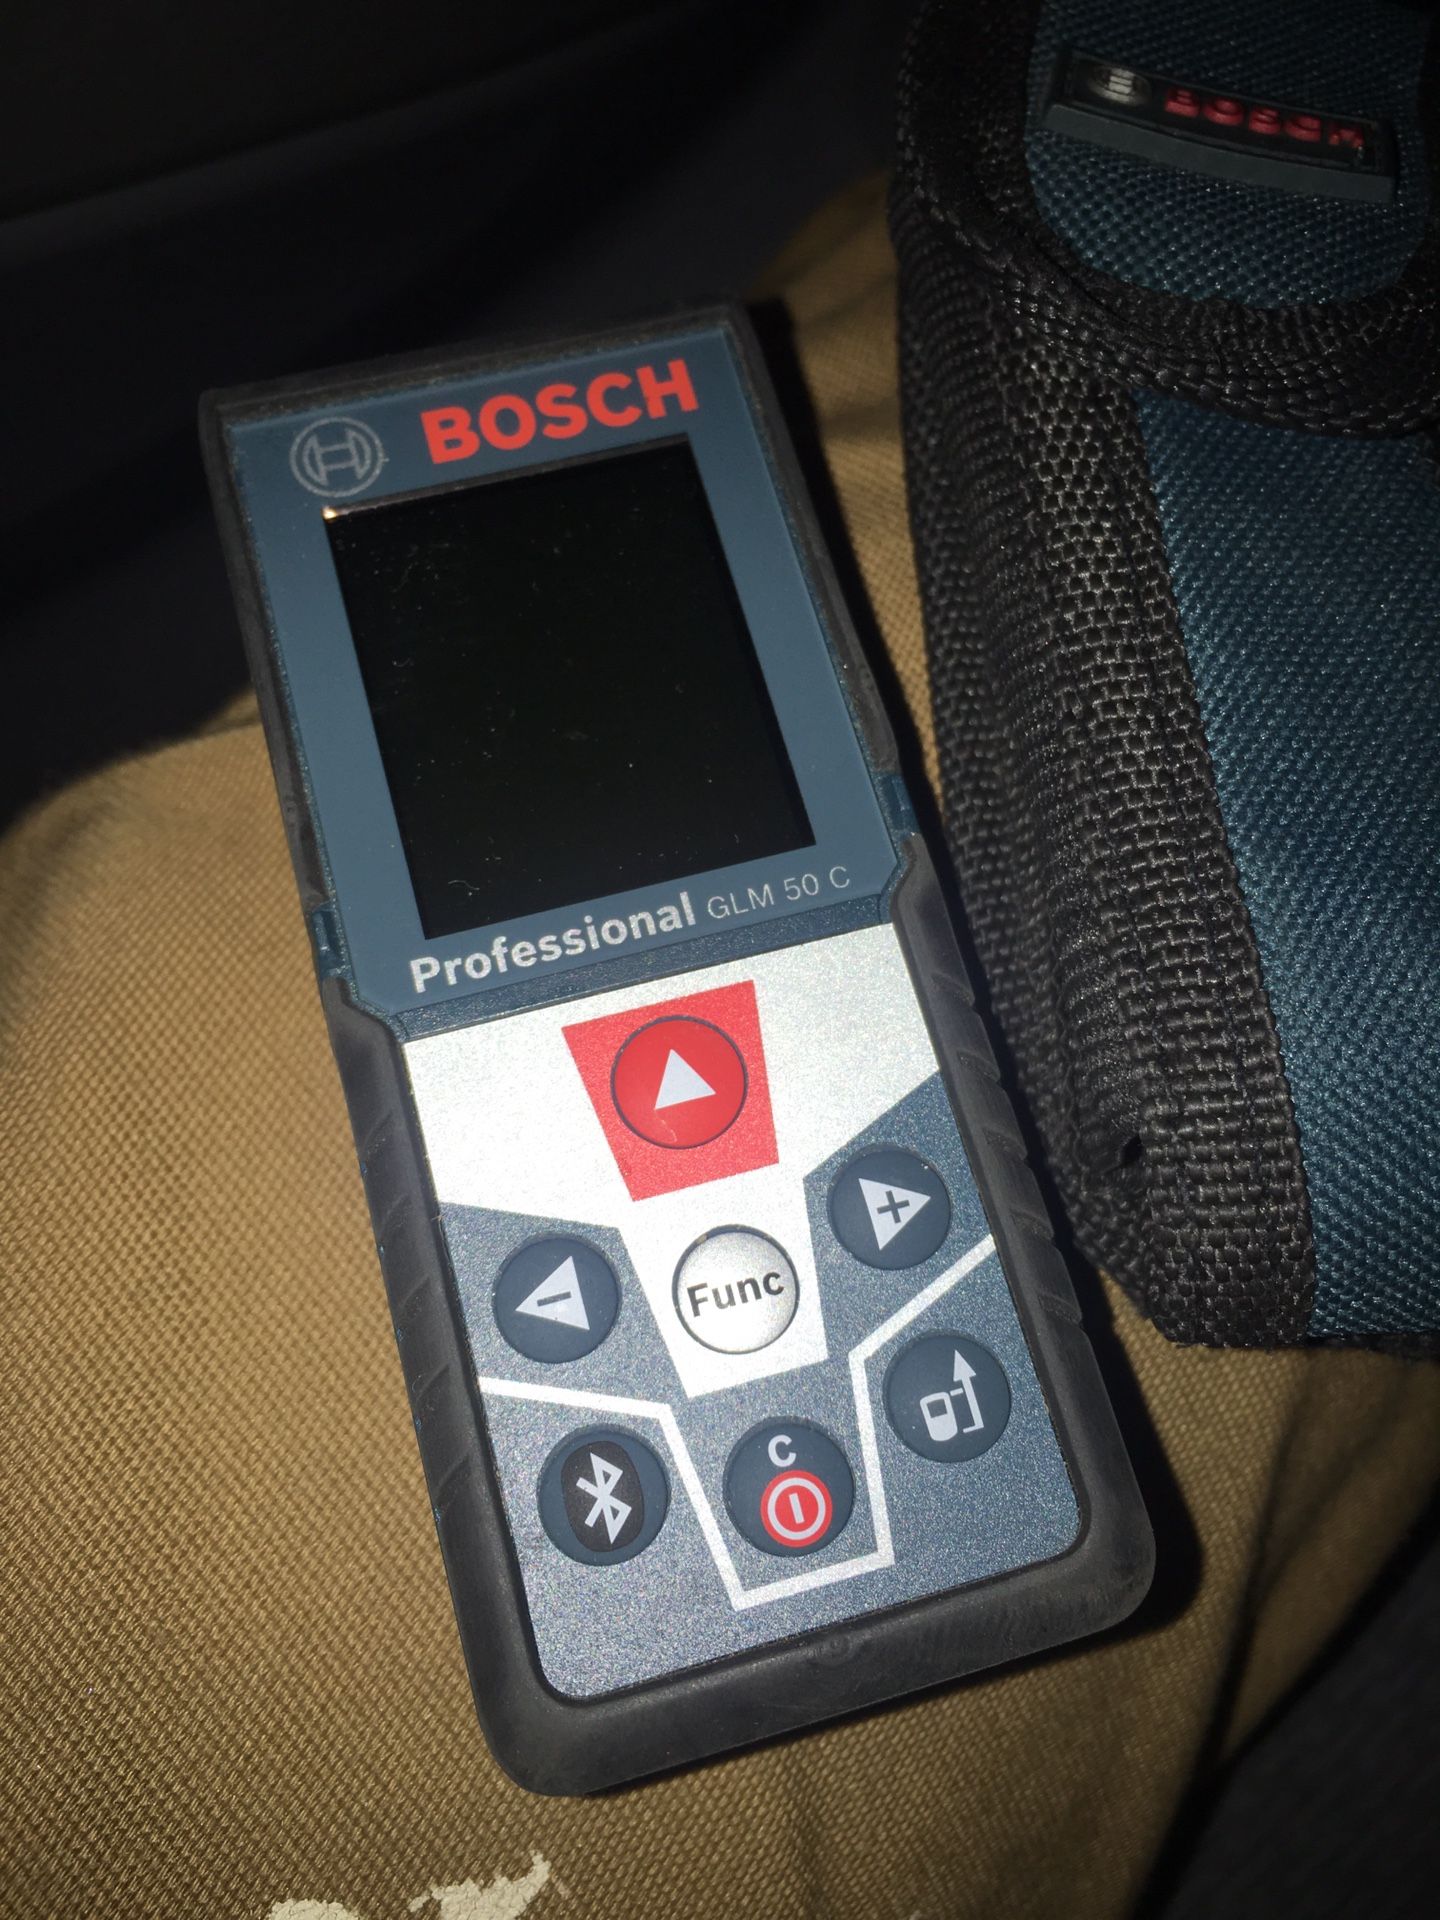 Bosch Professional GLM 50 C